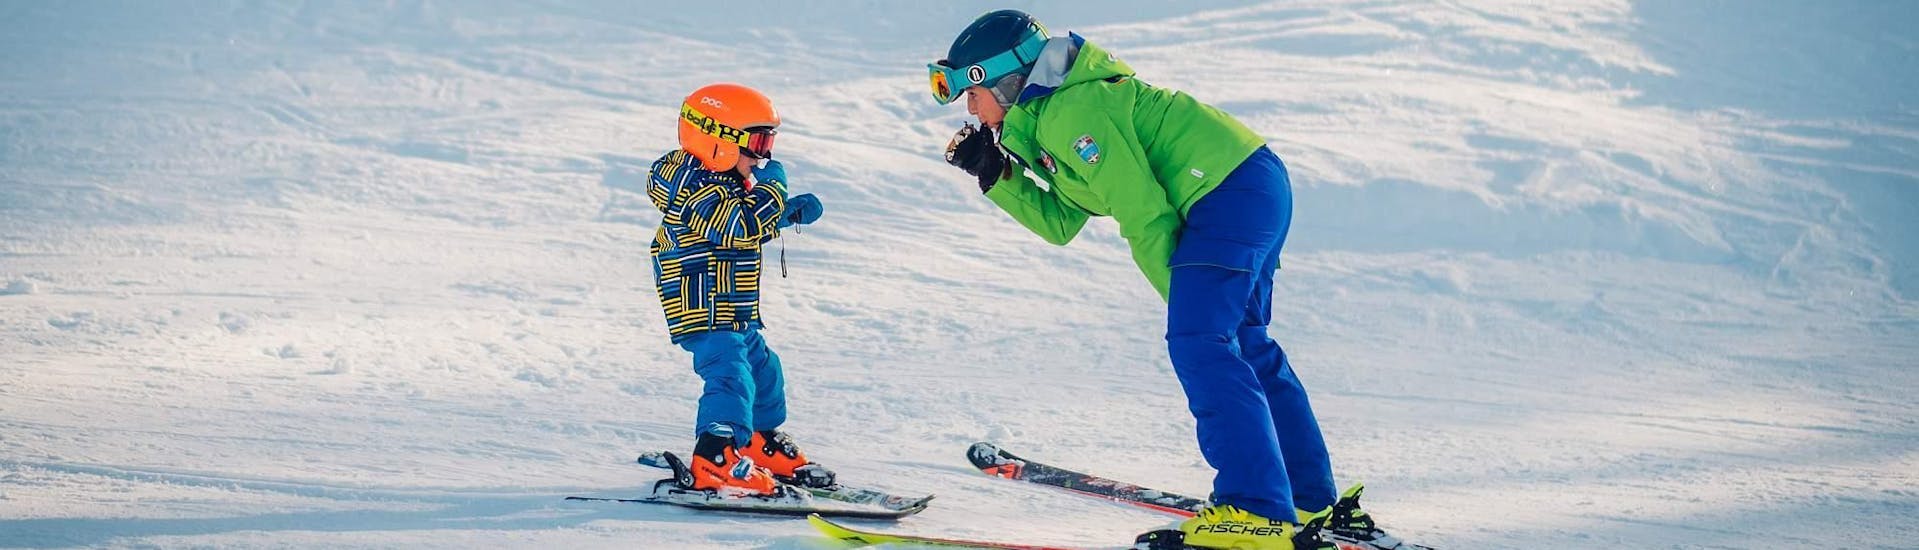 Un enfant apprend à skier pendant son Cours particulier de ski pour Enfants - Tous niveaux, avec un moniteur de l'école de ski Scuola di Sci B.foxes.